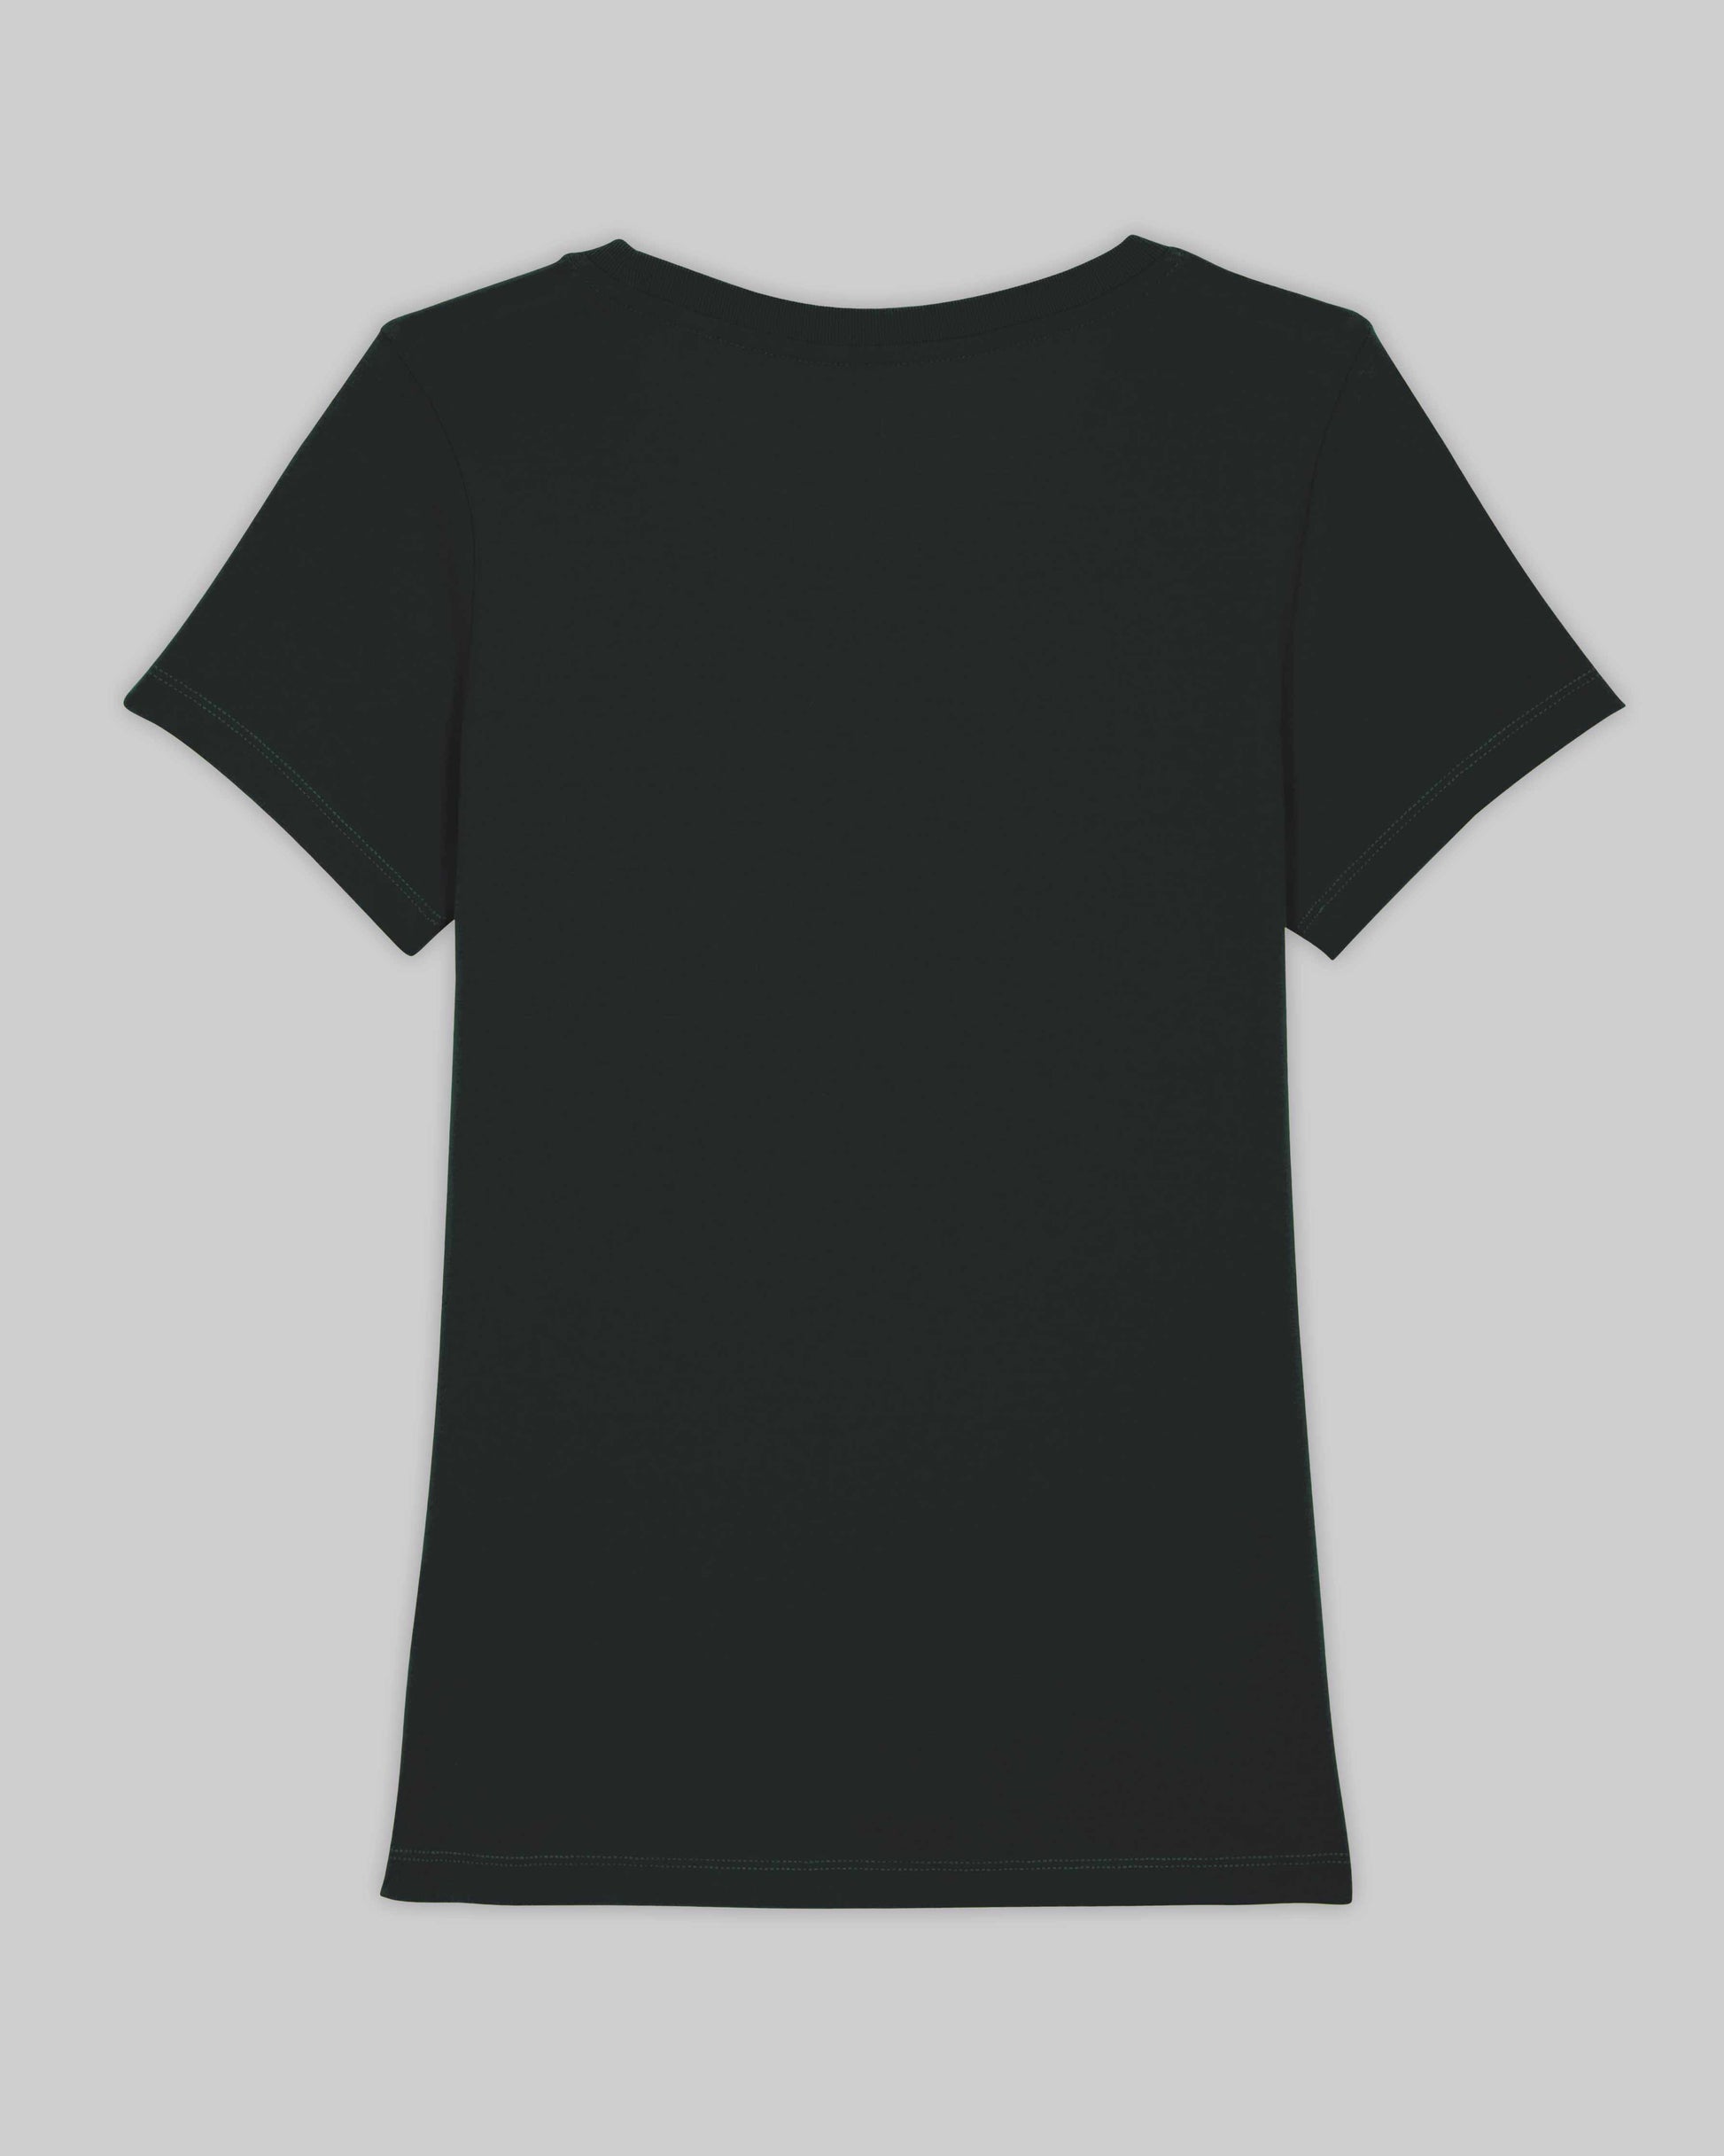 EINHORST® Organic Shirt tailliert in "Schwarz" mit dem Motiv "proud Regenbogen" in der Kombination weißer Regenbogen mit weißer Schrift, Bild von Shirt von hinten